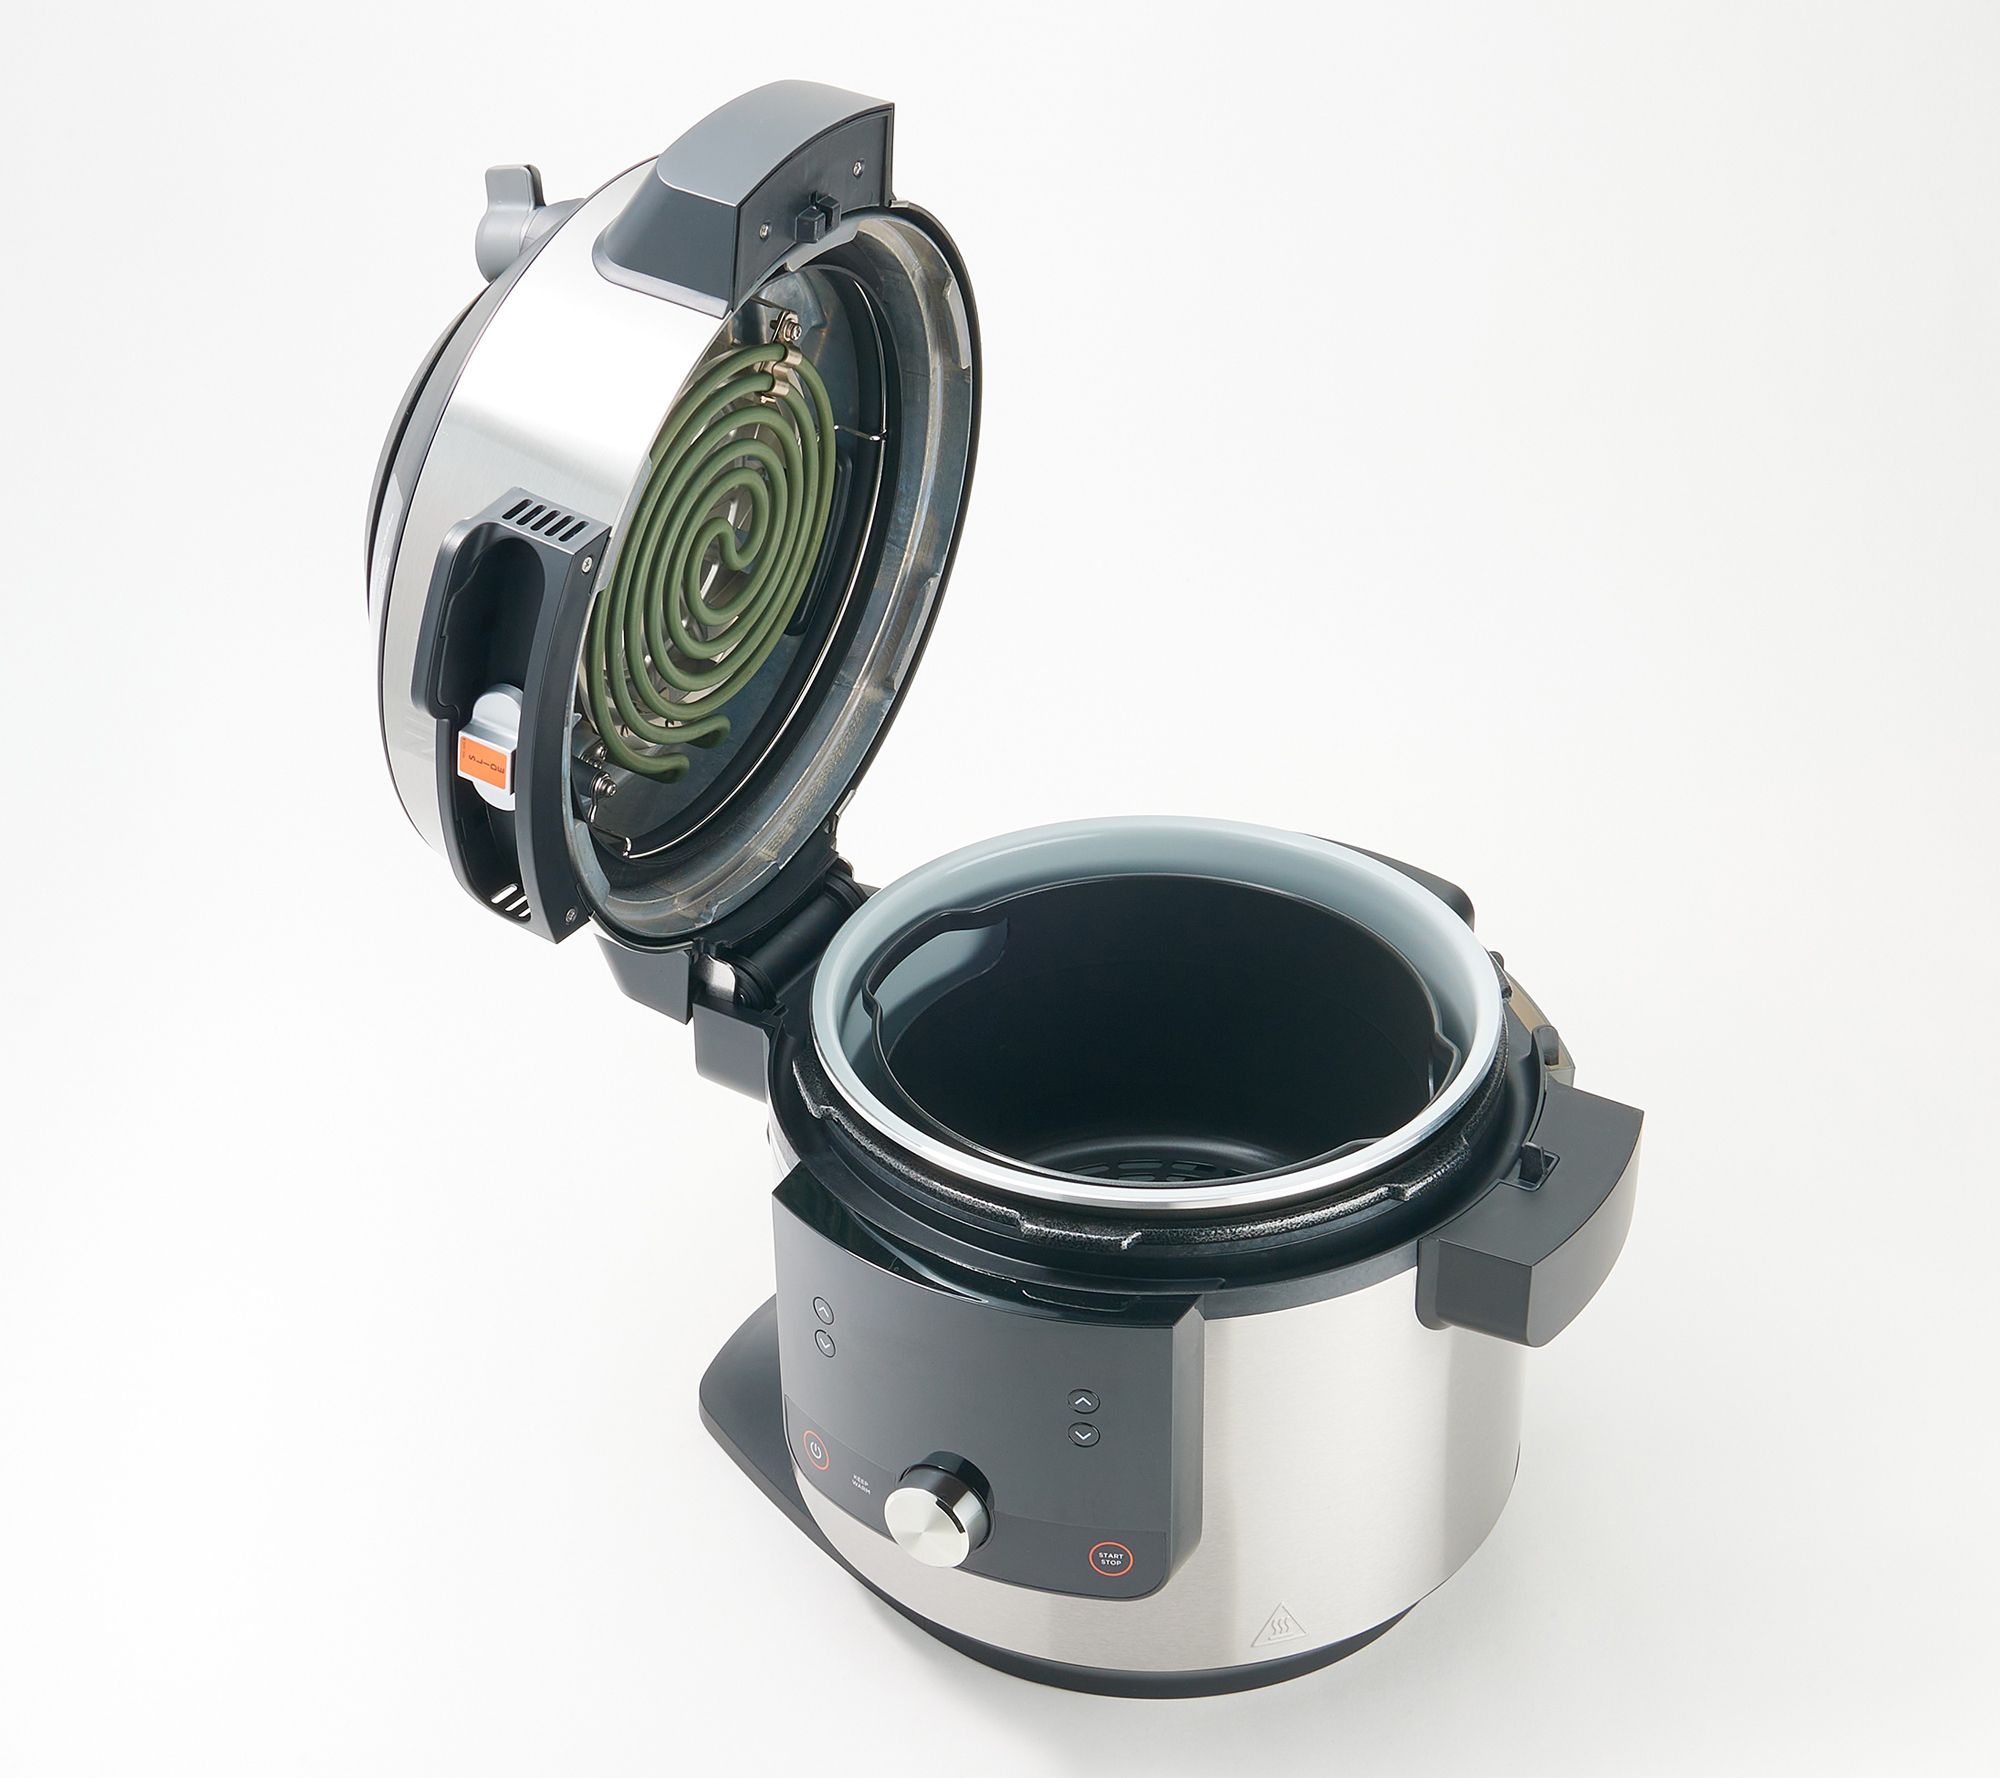 Ninja OL701 Foodi SMART XL 8 Qt. Pressure Cooker Steam Fryer with